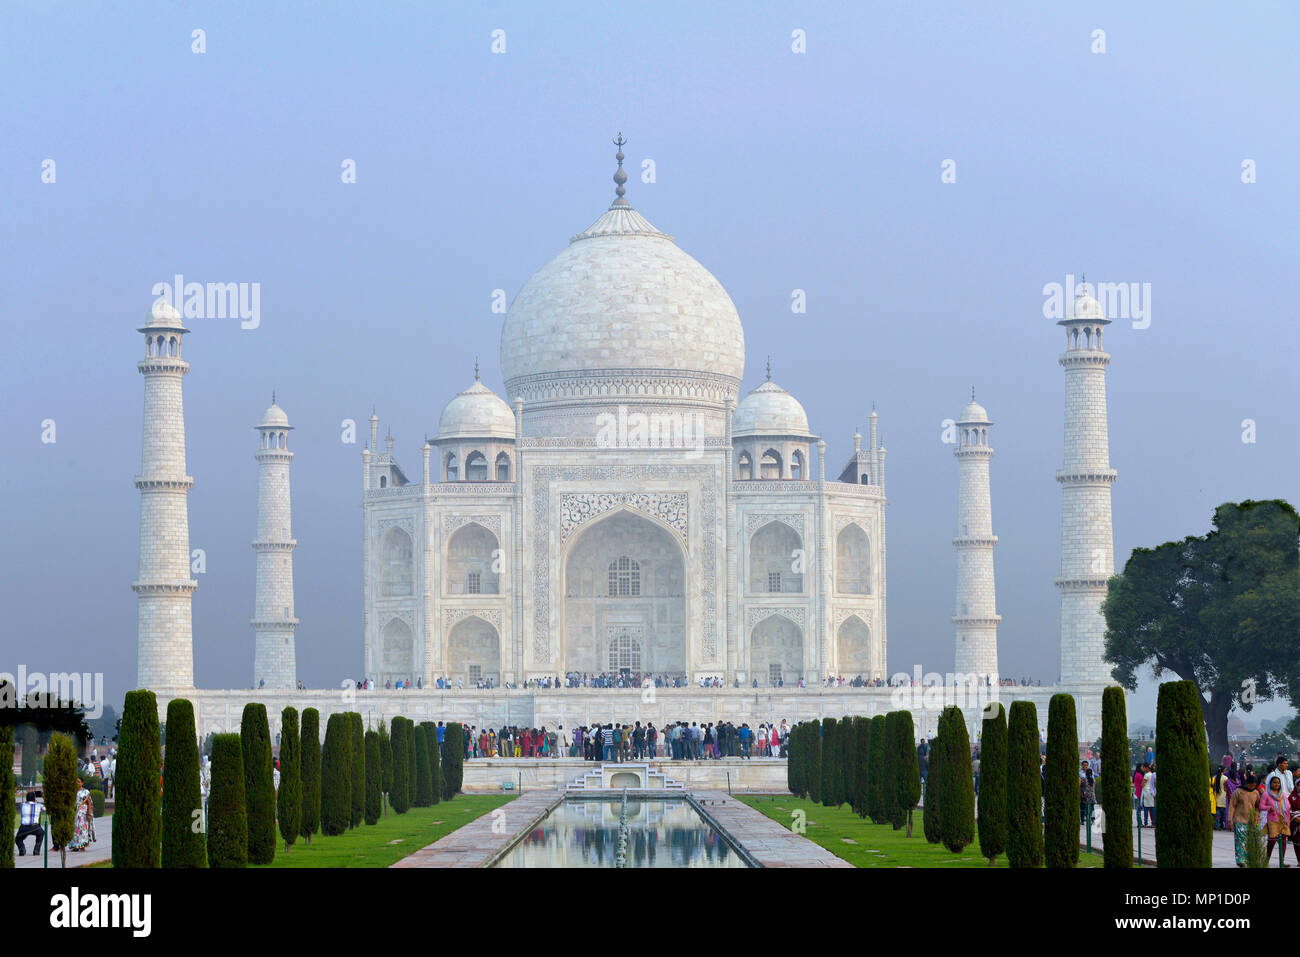 Taj Mahal, vue d'ensemble avec un large canal d'eau et fontaines de marbre sur l'axe nord-sud, Āgra, Uttar Pradesh, Inde Banque D'Images